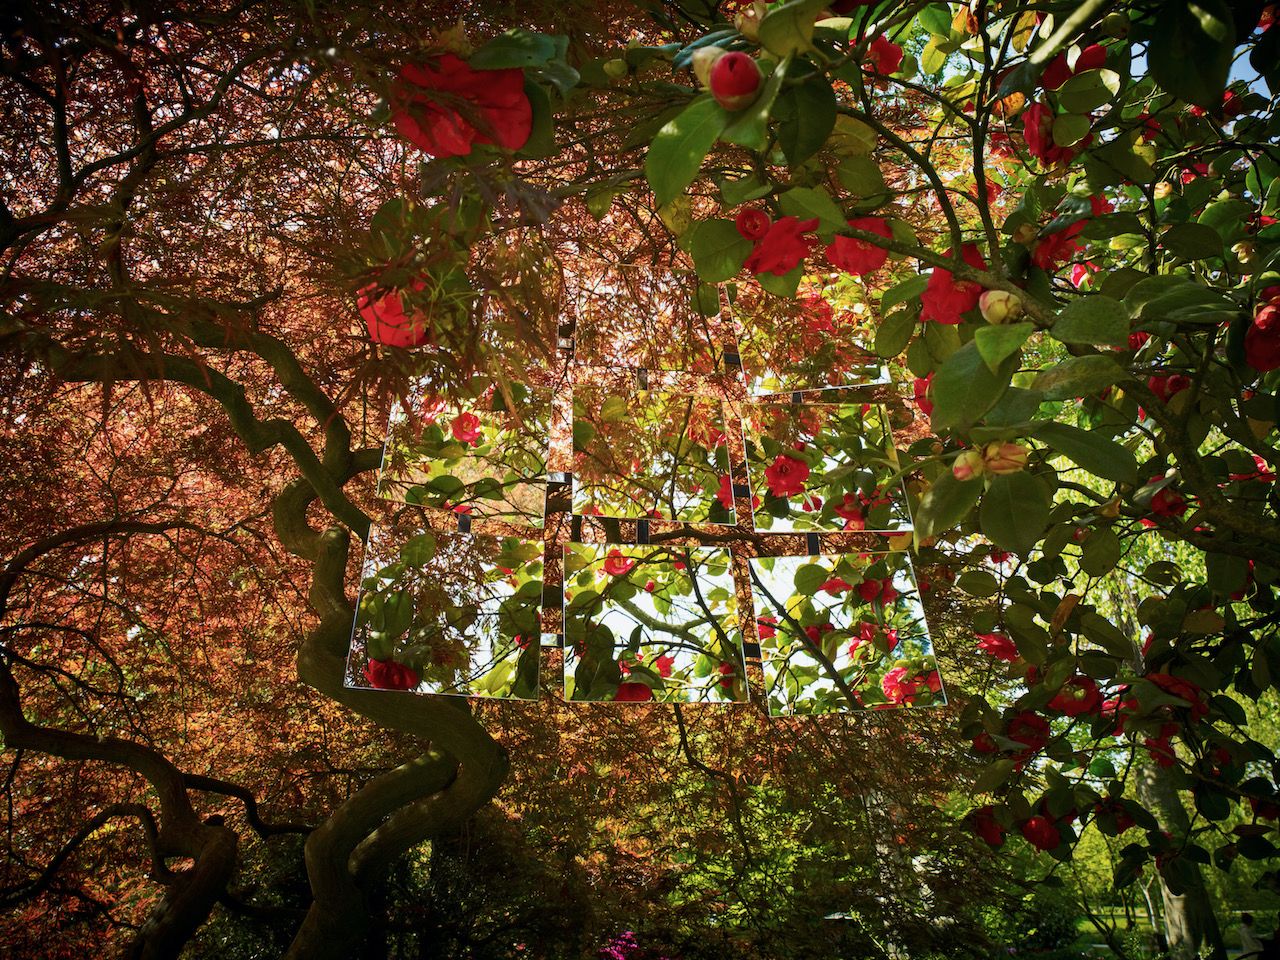 Michael Haegele Nature Photographie Vue de l'intérieur Coiffes d'arbres avec fleurs rouges et roses et neuf miroirs disposés